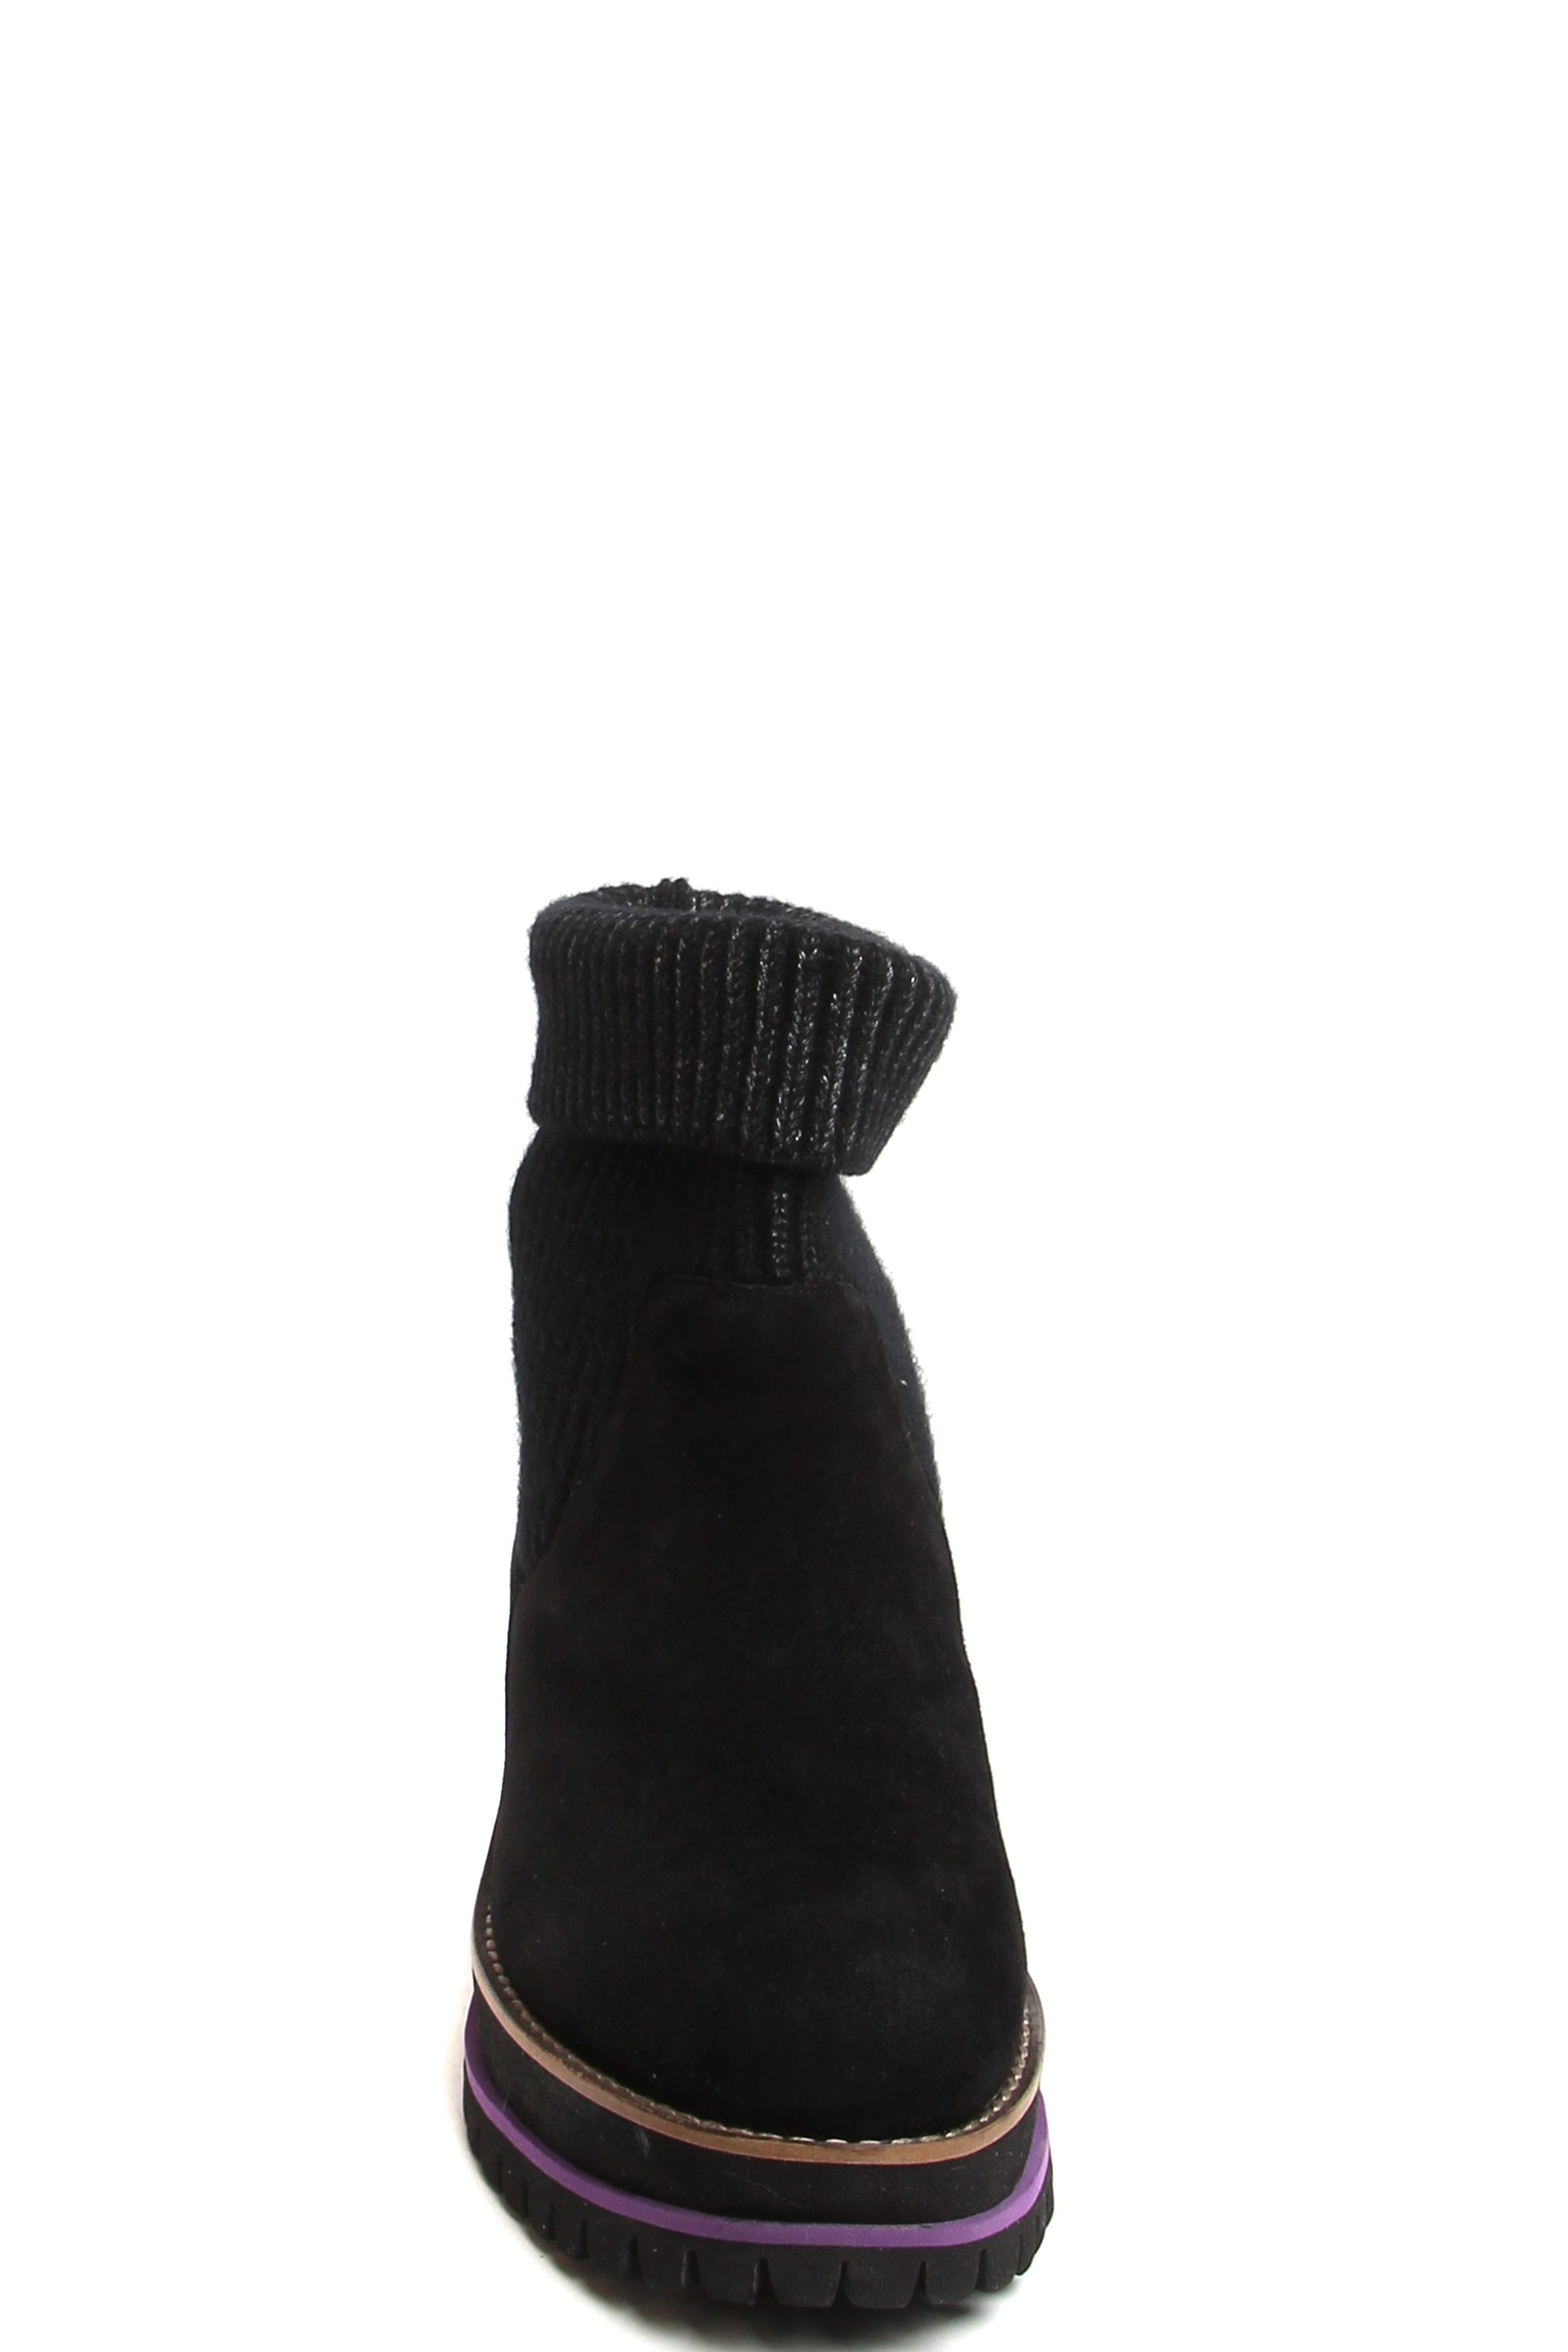 182251-1-210W ботинки  взрослый  жен. зимн. натуральная кожа (велюр); текстиль/натуральная шерсть /т